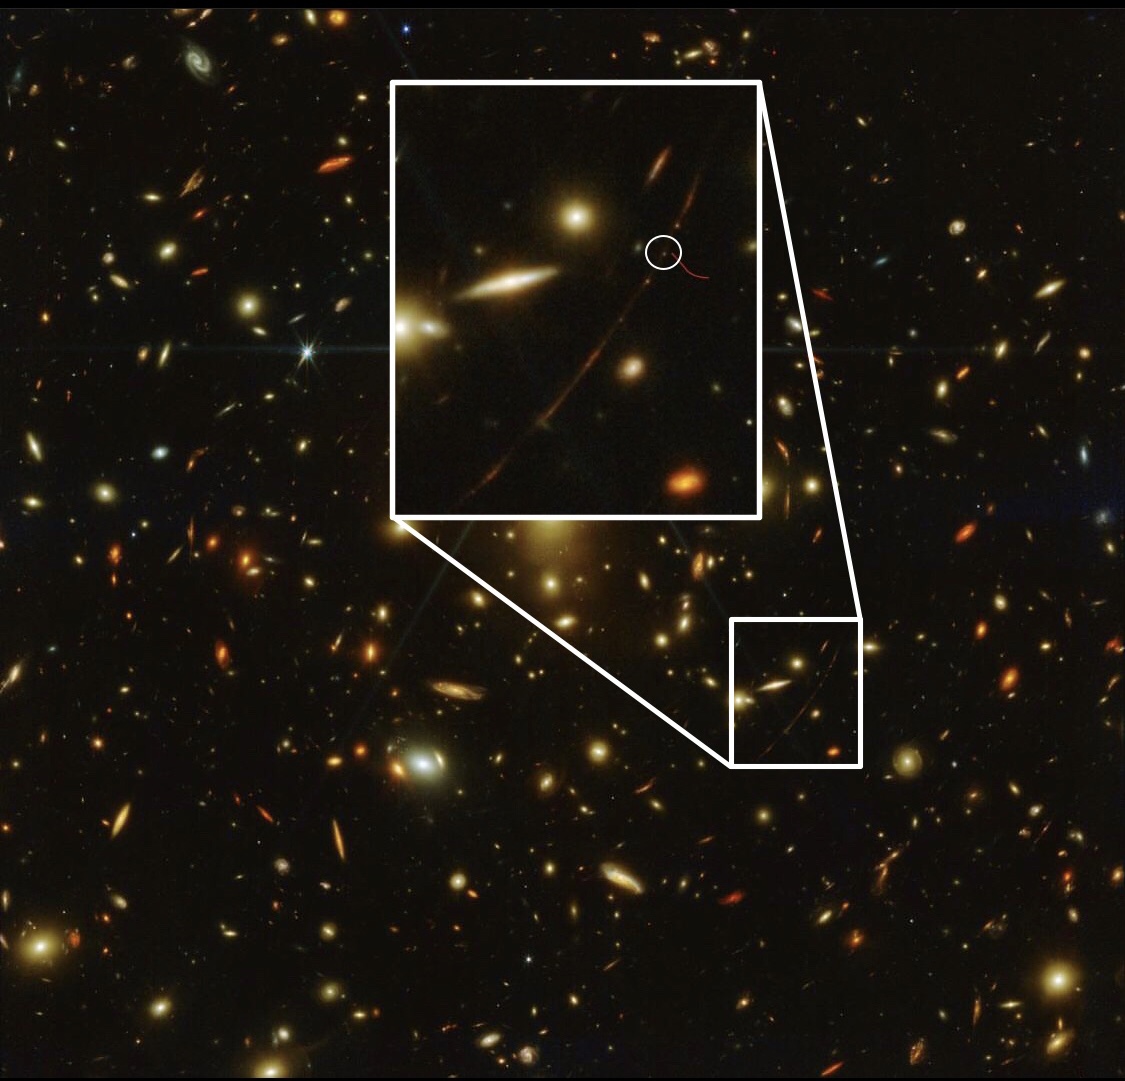 Хотя некоторые люди могут подумать, что Эарендель — это яркая остроконечная звезда на недавней фотографии, это не так, и вот ее фактическое местоположение. Кредиты: НАСА, ЕКА, CSA, STScI.